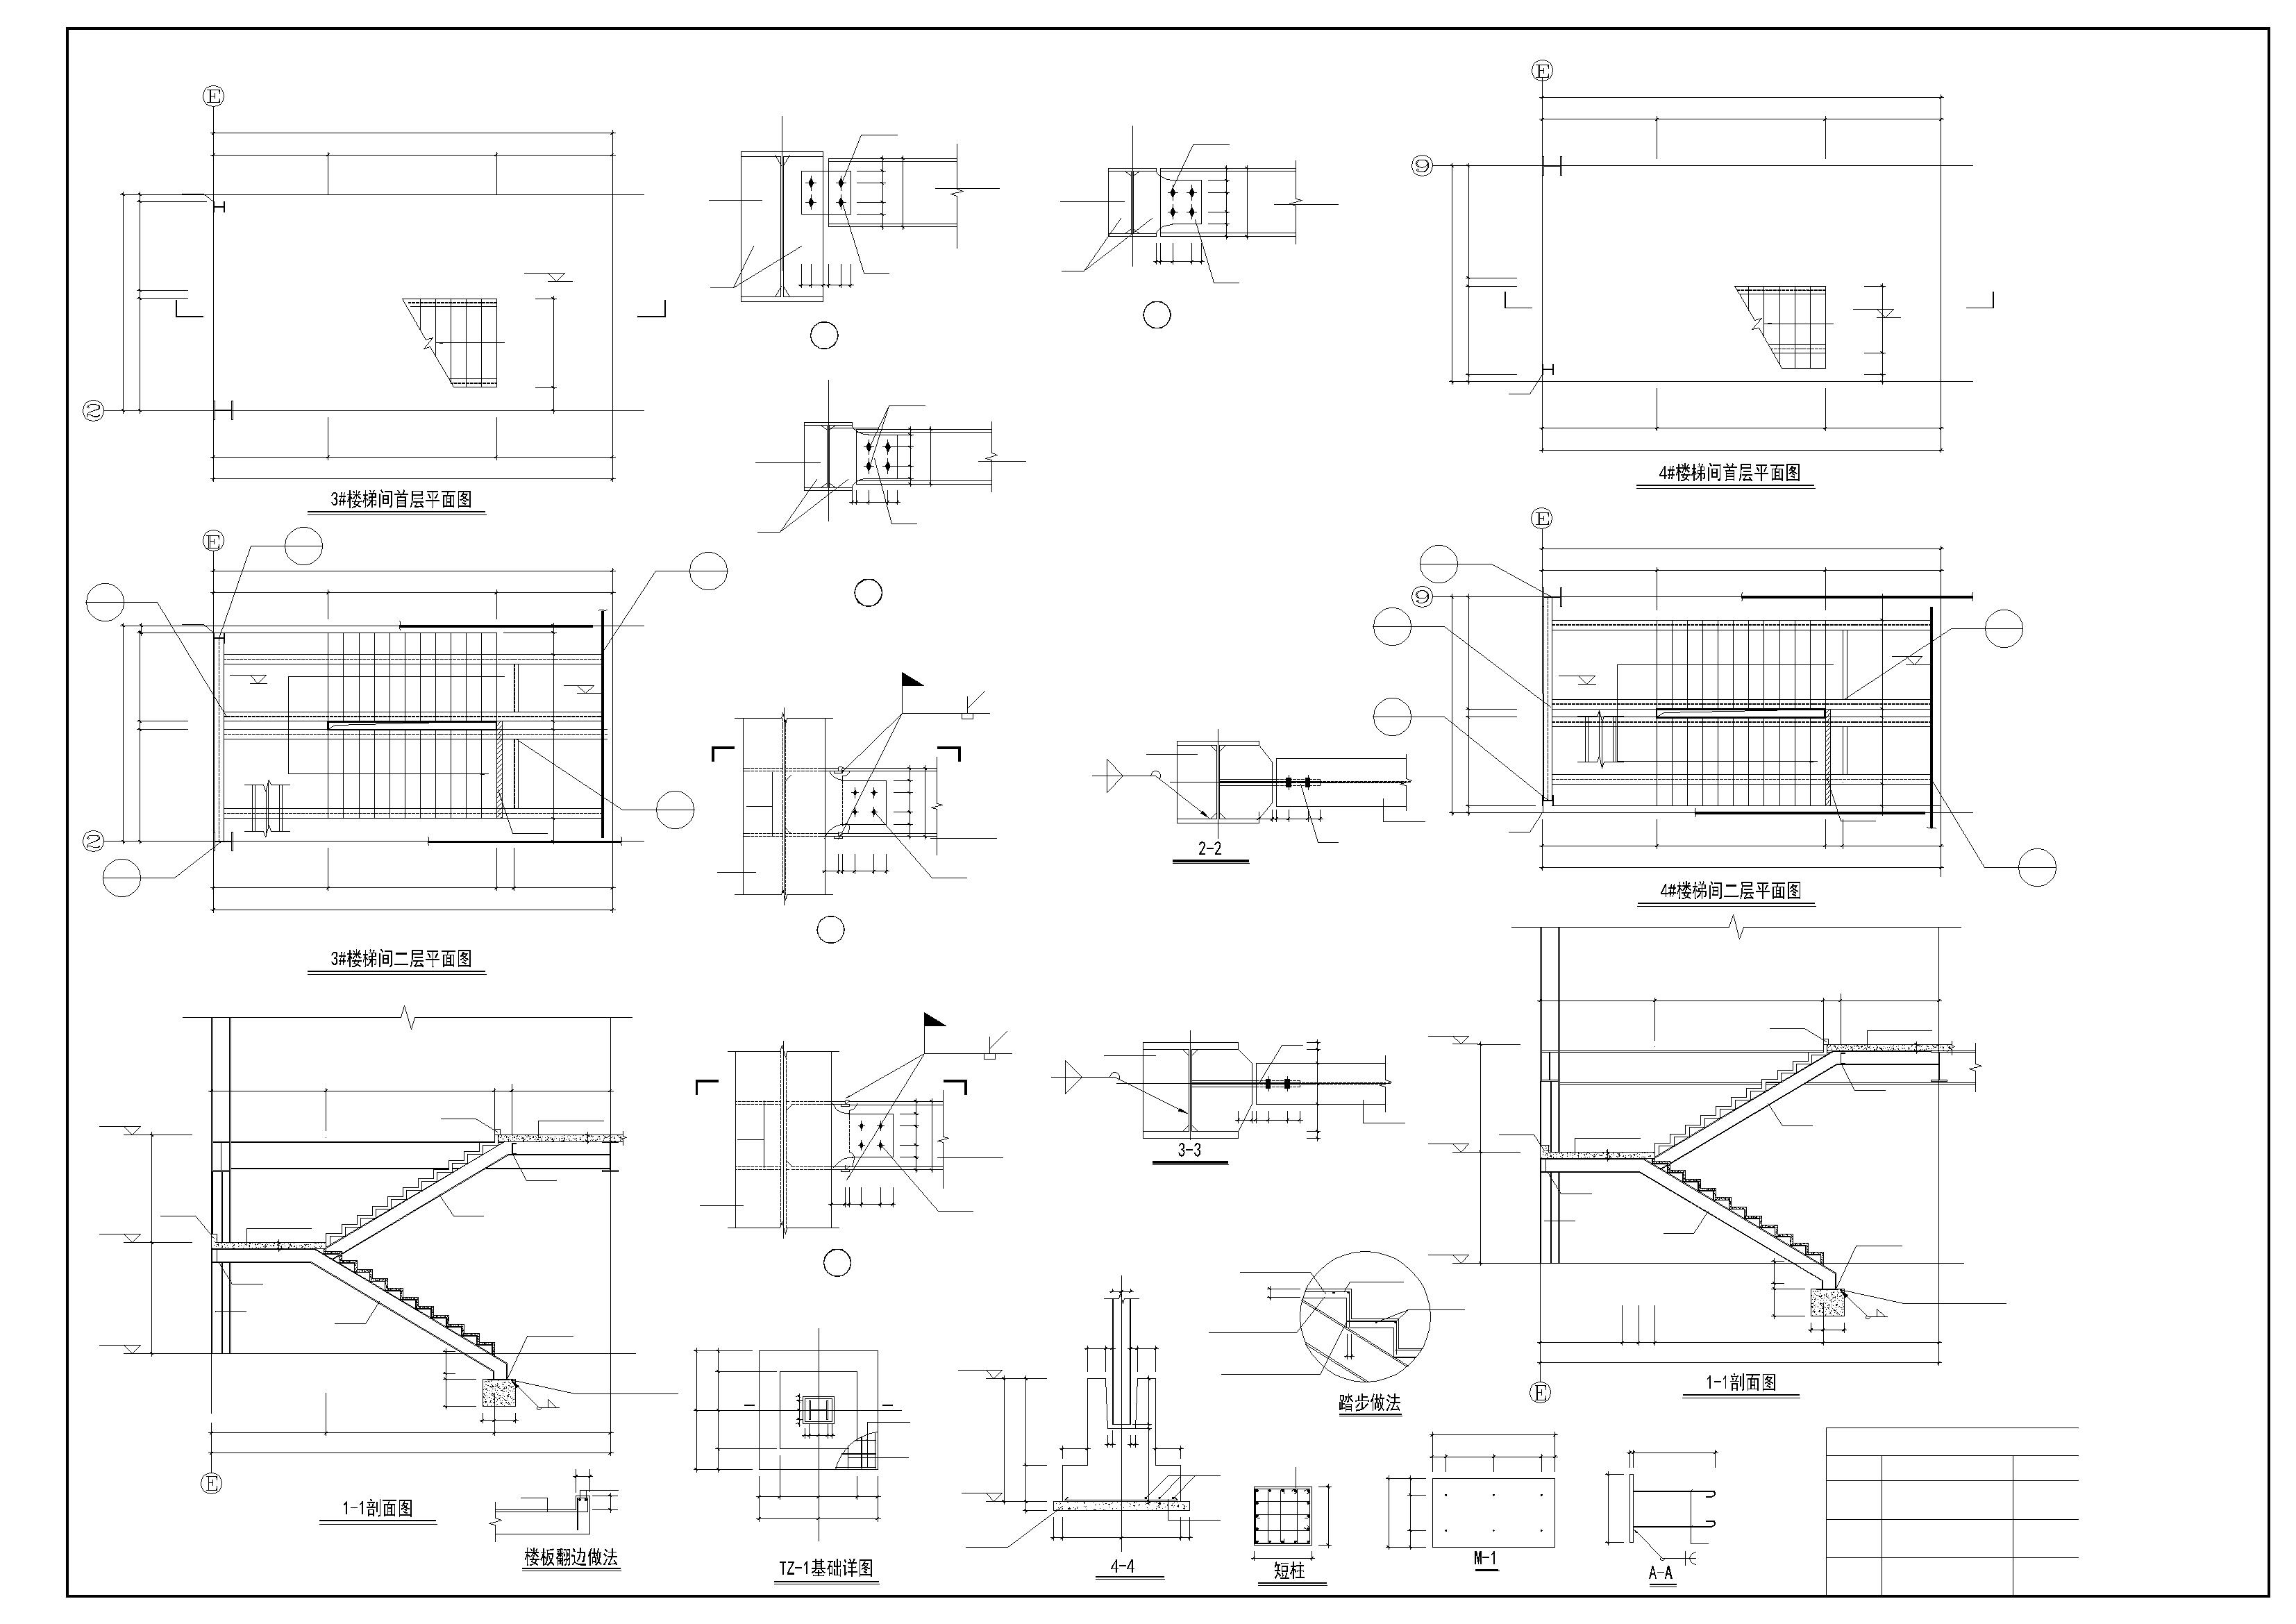 某多层工业厂房钢楼梯上铺混凝凝土面层做法施工图